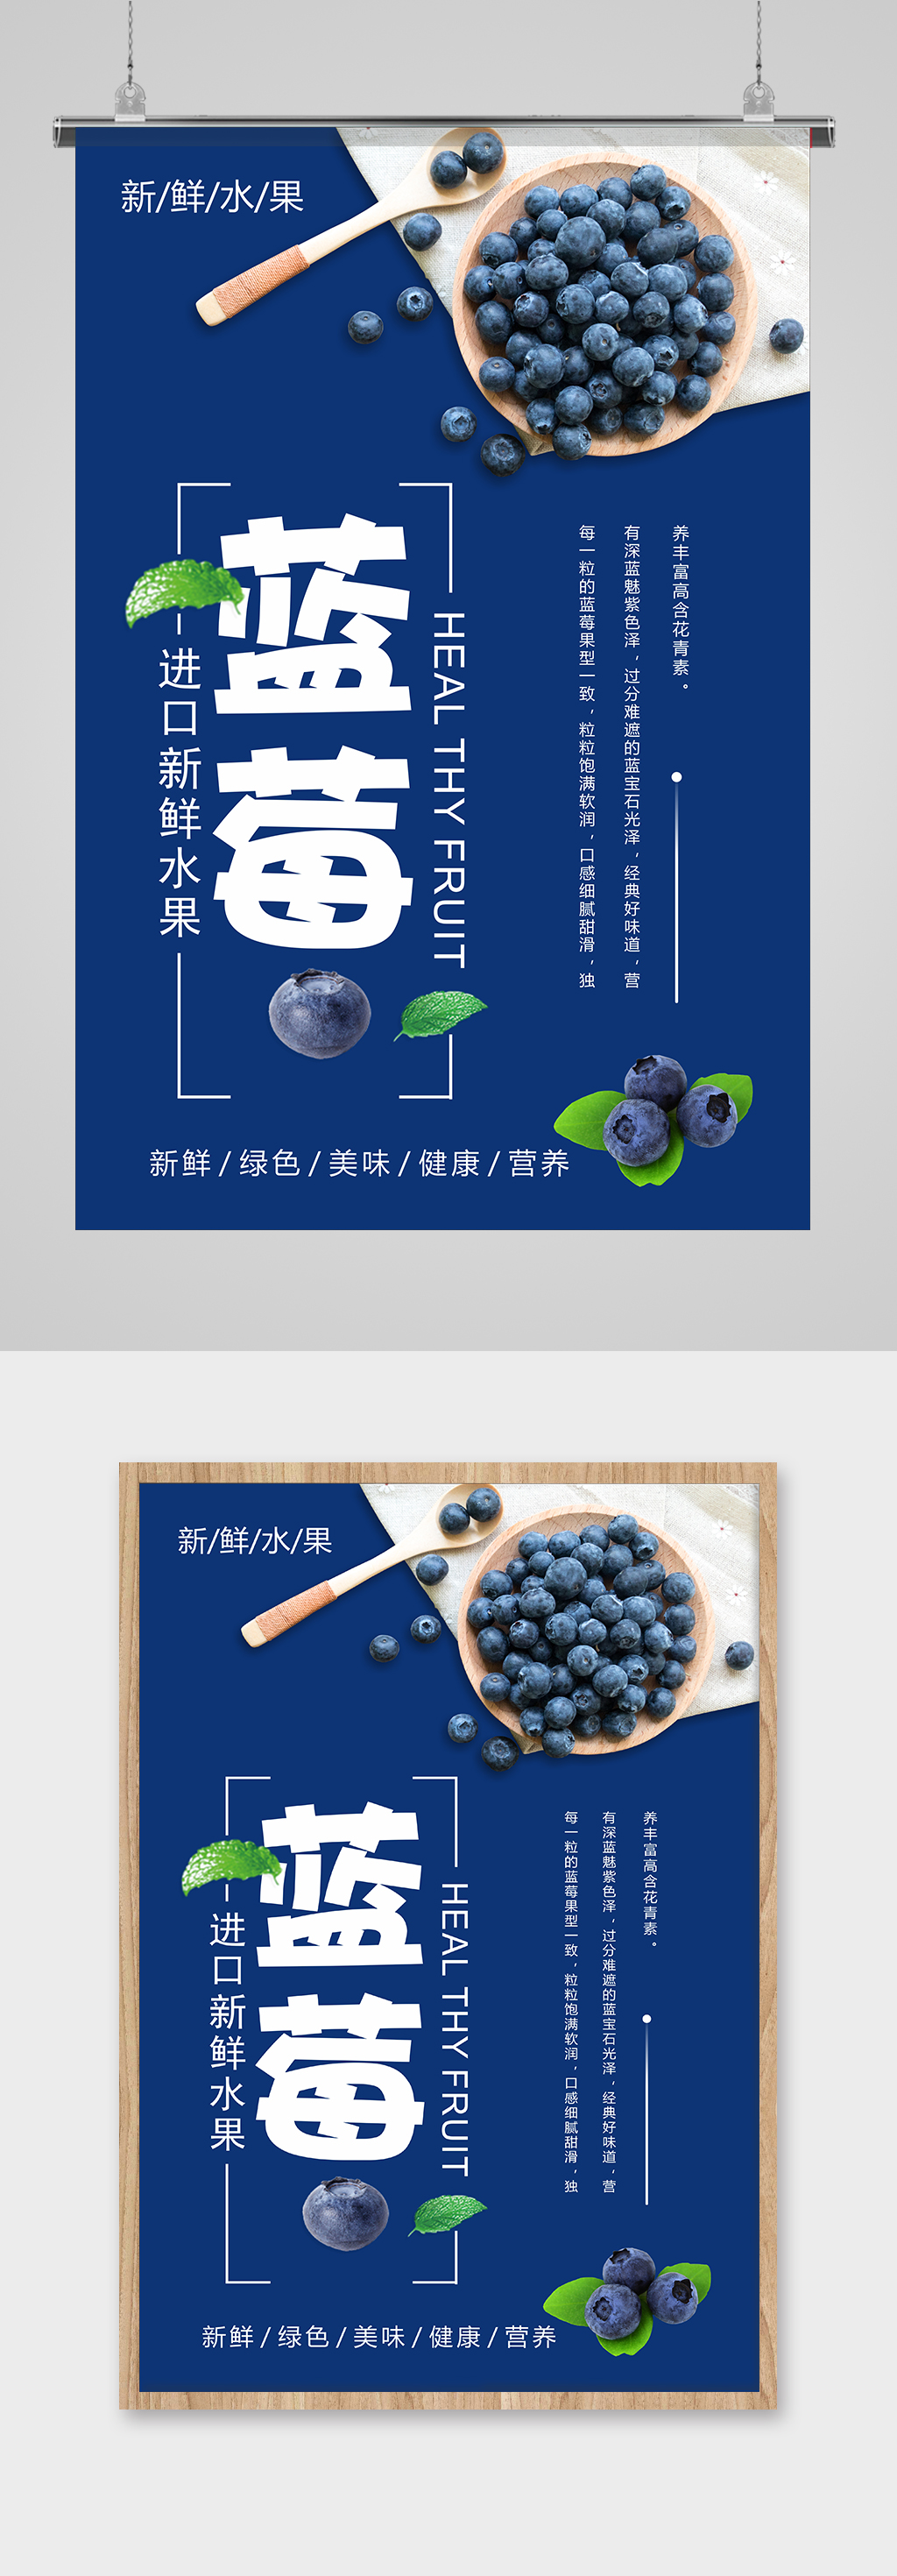 蓝色大气蓝莓海报